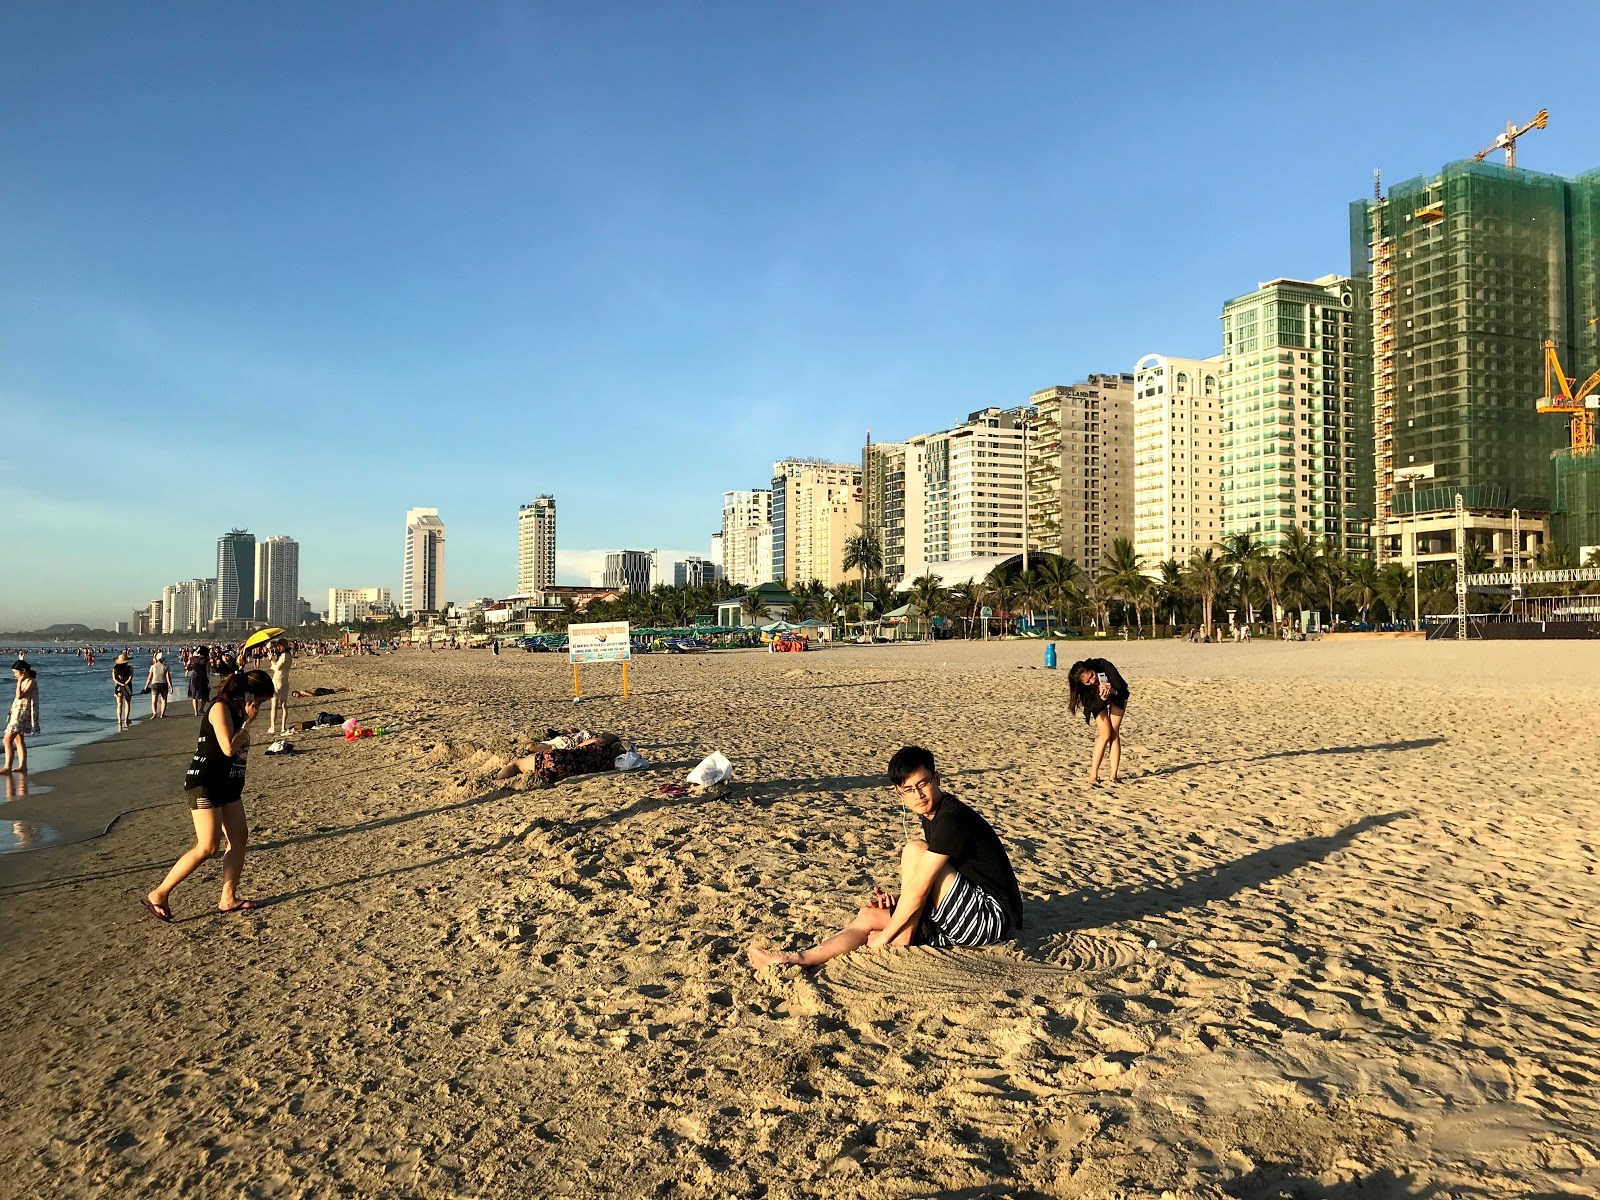 Φωτογραφία του My Khe Beach - δημοφιλές μέρος μεταξύ λάτρεις της χαλάρωσης